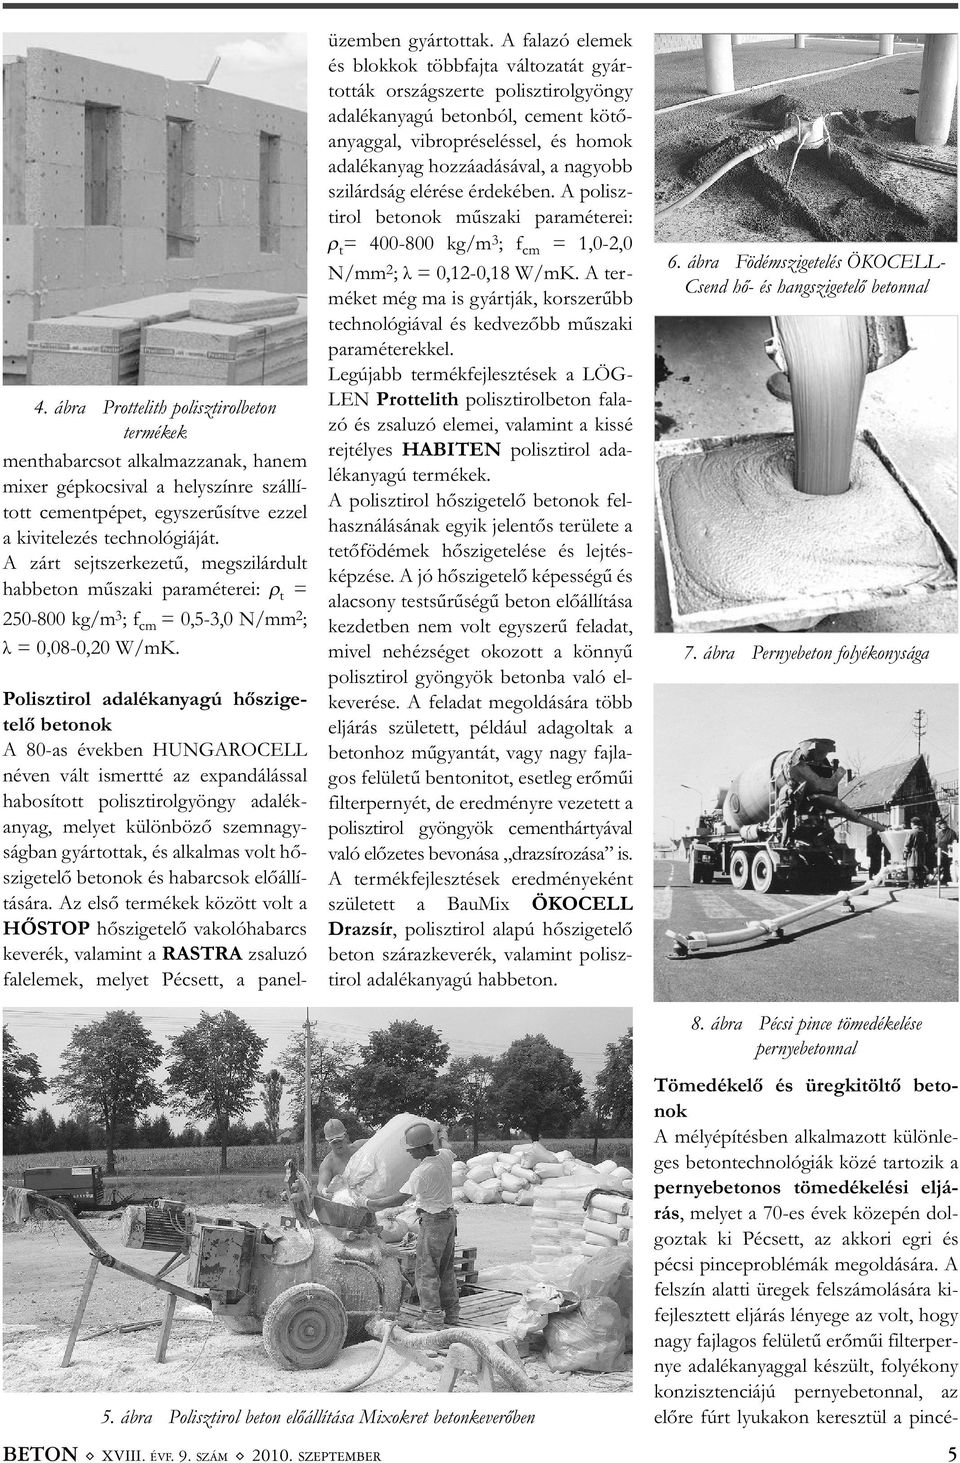 Polisztirol adalékanyagú hőszige - telő betonok A 80-as években HUNGAROCELL né ven vált ismertté az expandálással ha bo sított polisztirolgyöngy adalék - anyag, melyet különböző szemnagy - ság ban